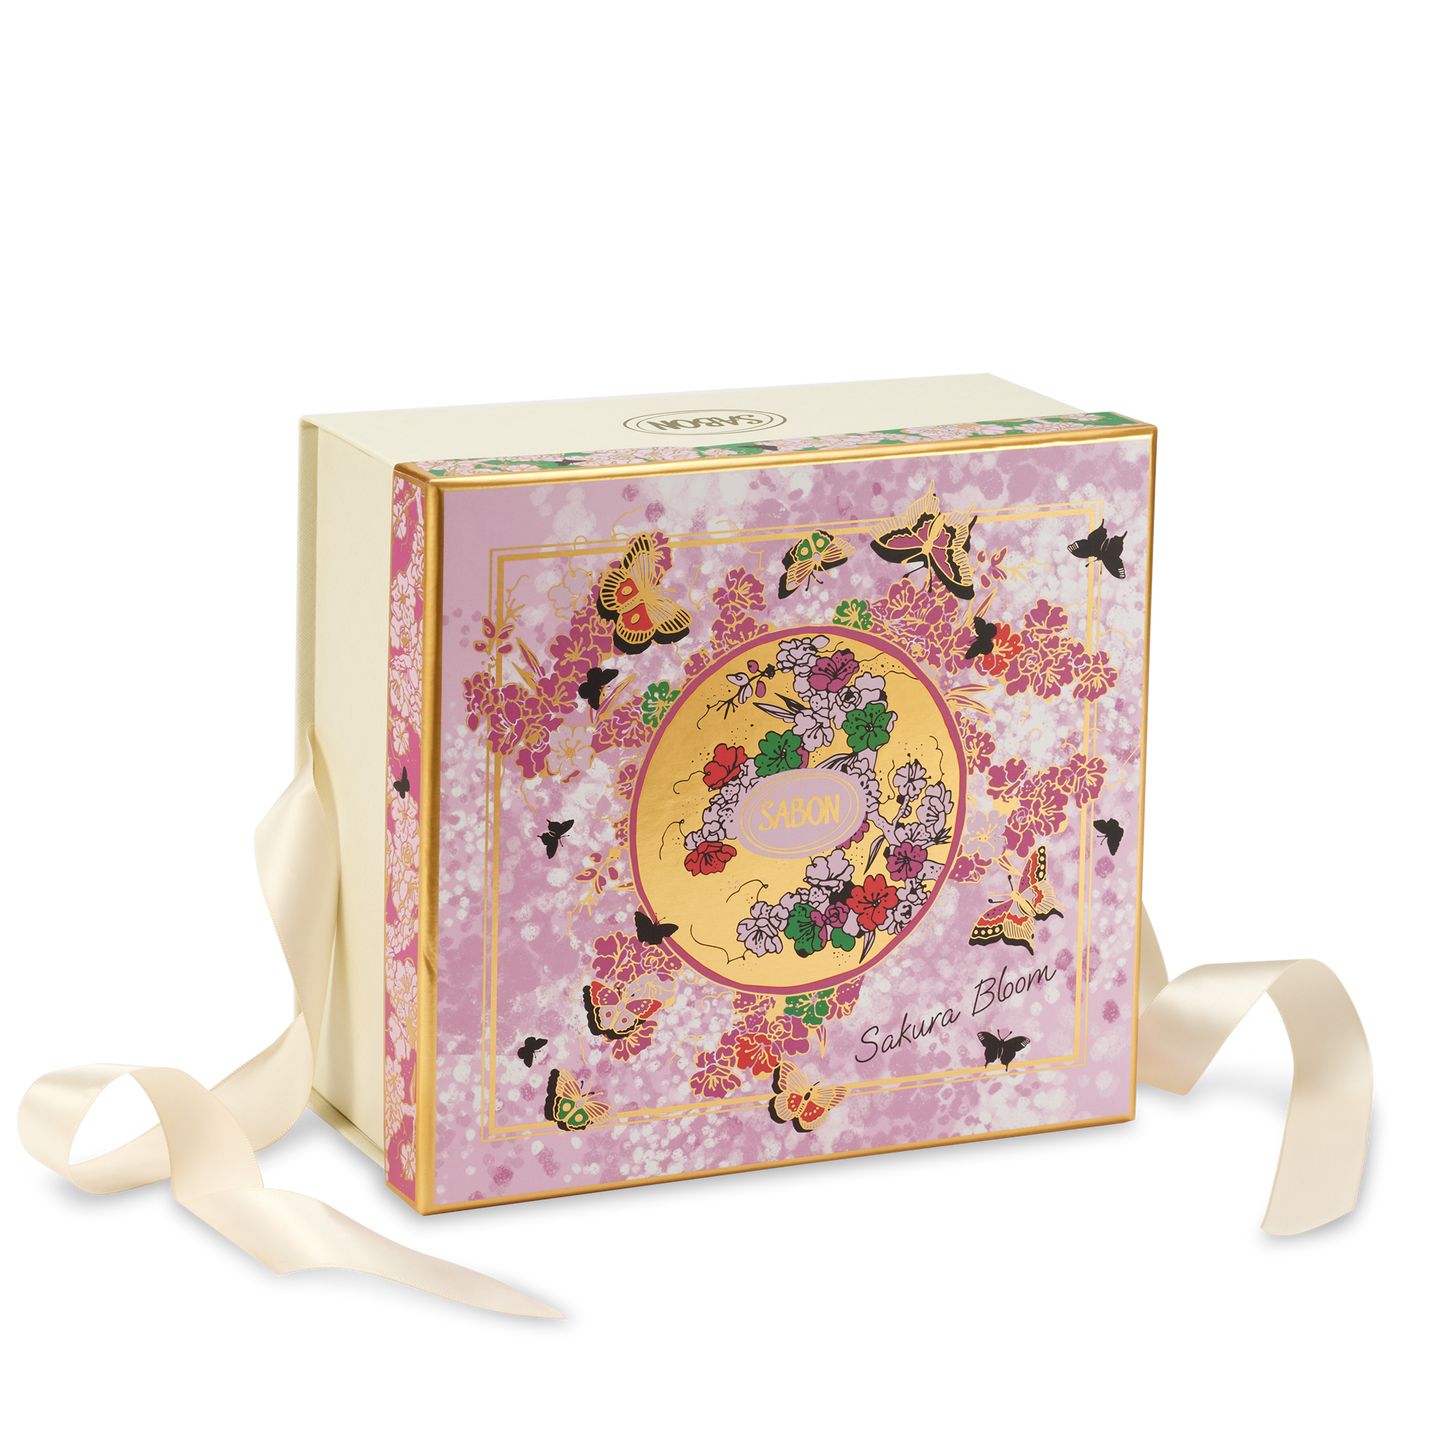 SABON Sakura Bloom Luxury Gift Box (Base M)